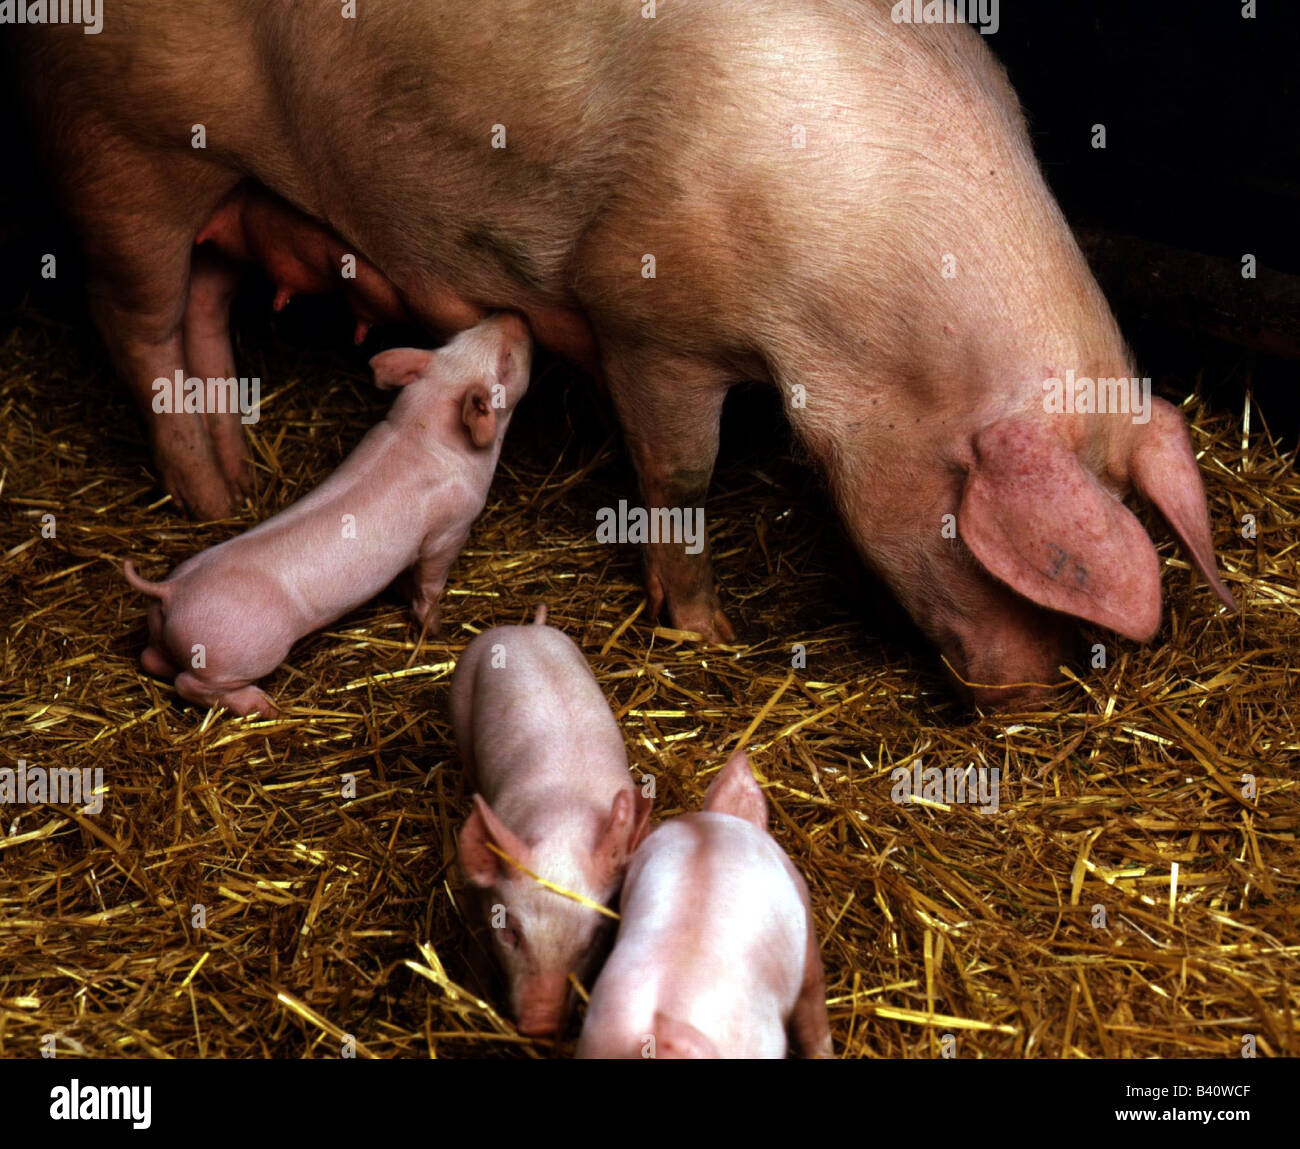 Zoologie / animaux, Mammifères Mammifères /, les porcs, les porcs domestiques, semer avec trois porcelets dans la paille, la distribution : dans le monde entier, Sus scrofa Banque D'Images